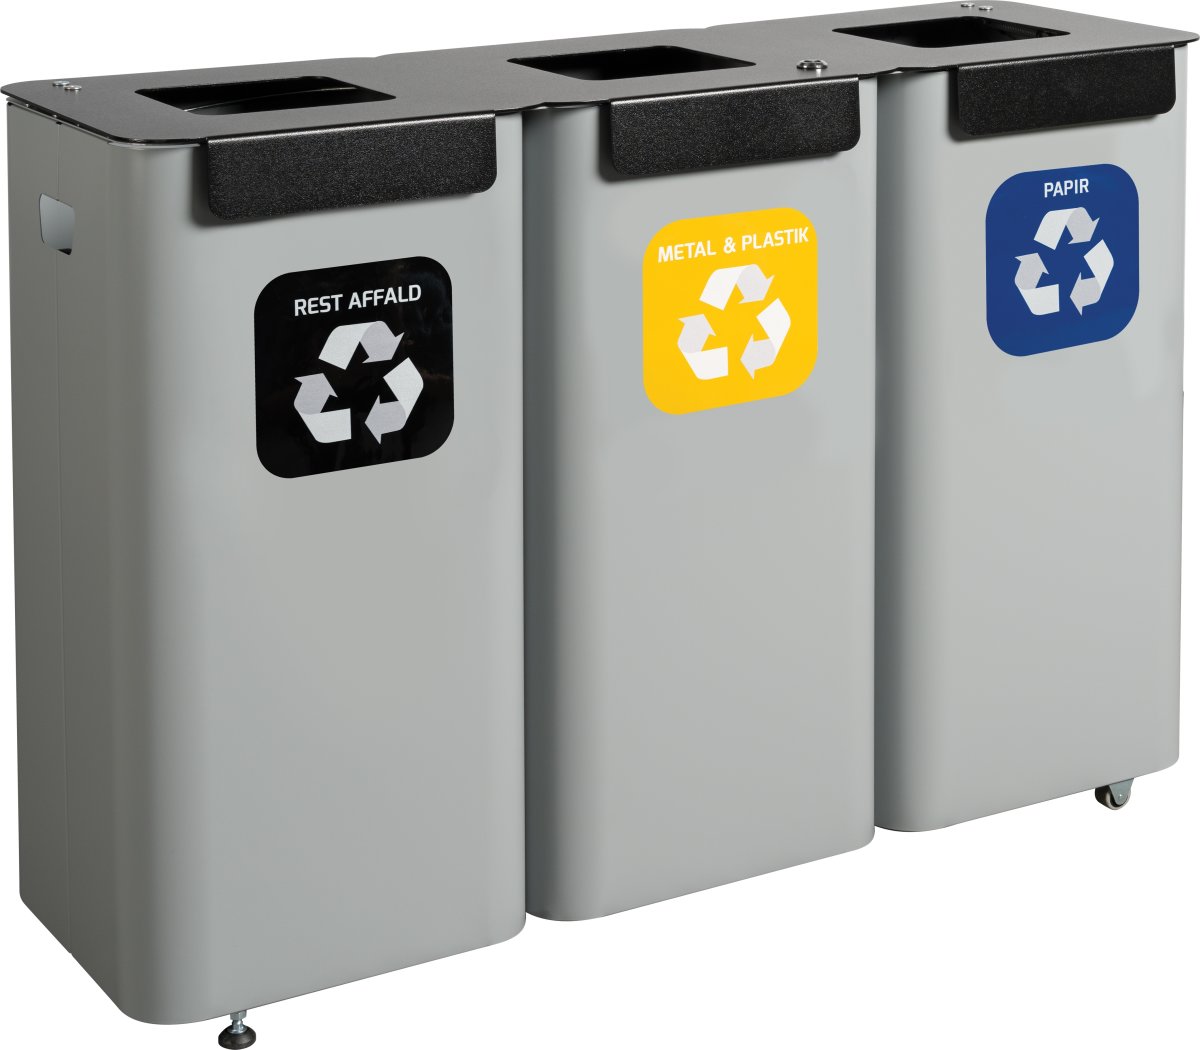 Modulspande til affaldssortering | 3 x 70 L